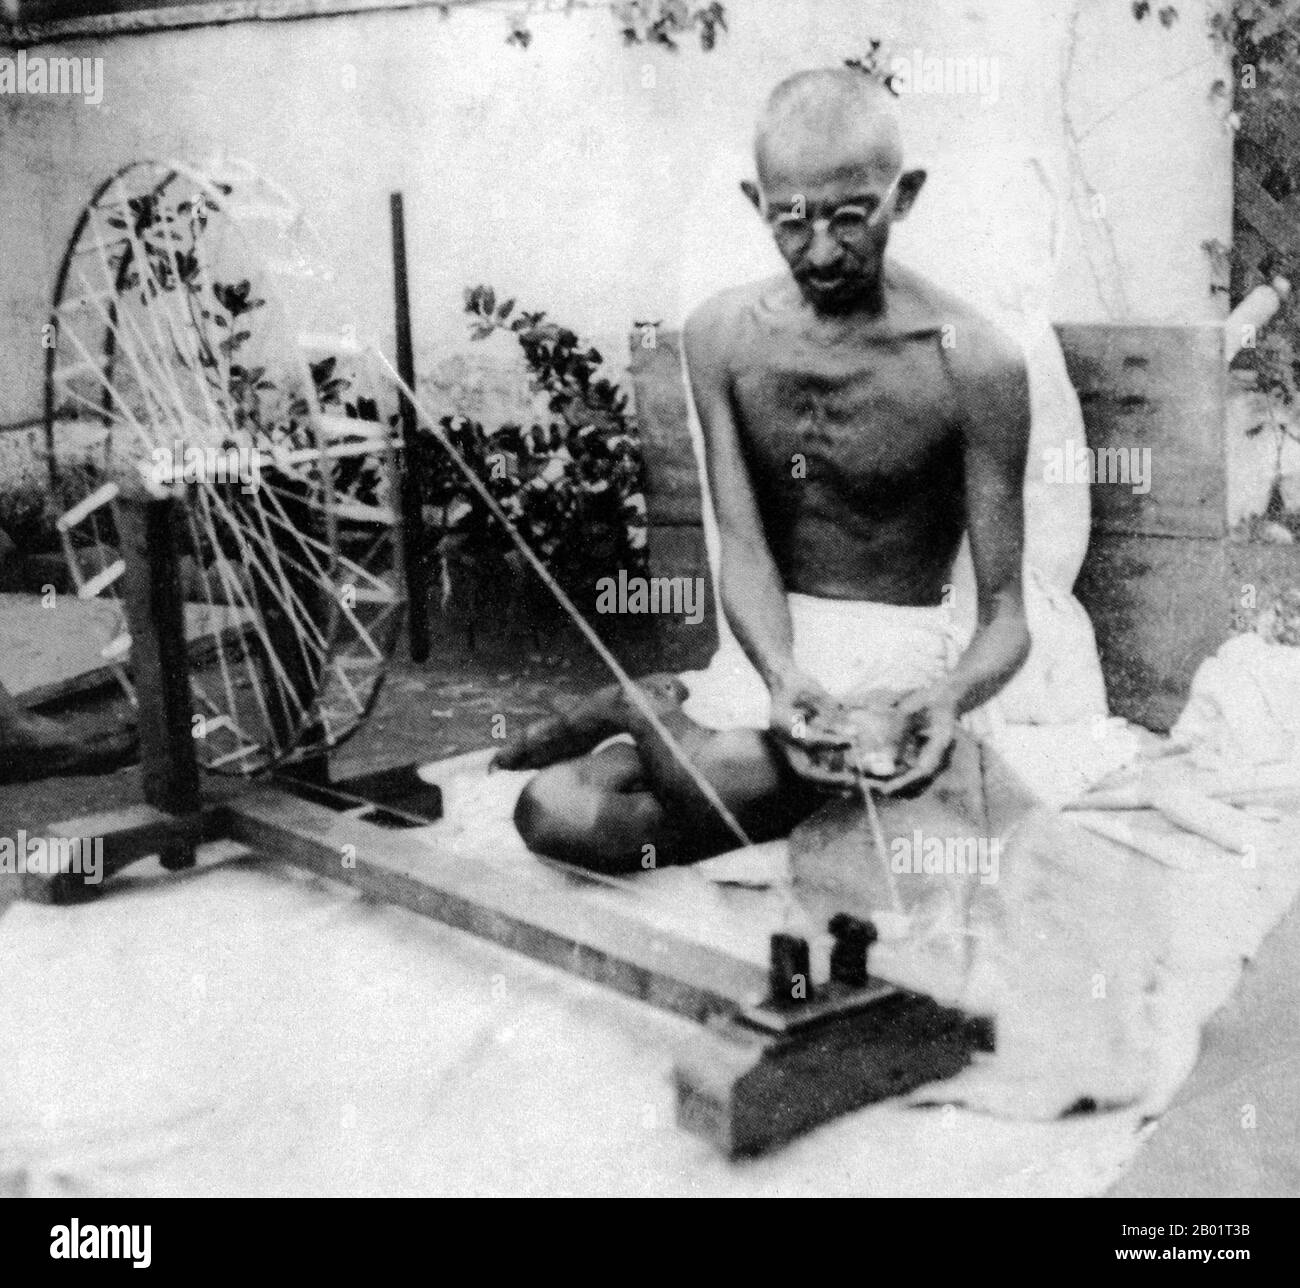 India: Mahatma Gandhi (2 ottobre 1869 - 30 gennaio 1948), leader politico e ideologico preminente del movimento indipendentista indiano, 1940 circa. Mohandas Karamchand Gandhi fu il leader politico e ideologico dell'India durante il movimento indipendentista indiano. Fu pioniere della satyagraha. Questa è definita come resistenza alla tirannia attraverso la disobbedienza civile di massa, una filosofia saldamente fondata sull'ahimsa, o totale non violenza. Questo concetto aiutò l'India a ottenere l'indipendenza e ispirò movimenti per i diritti civili e la libertà in tutto il mondo. Foto Stock